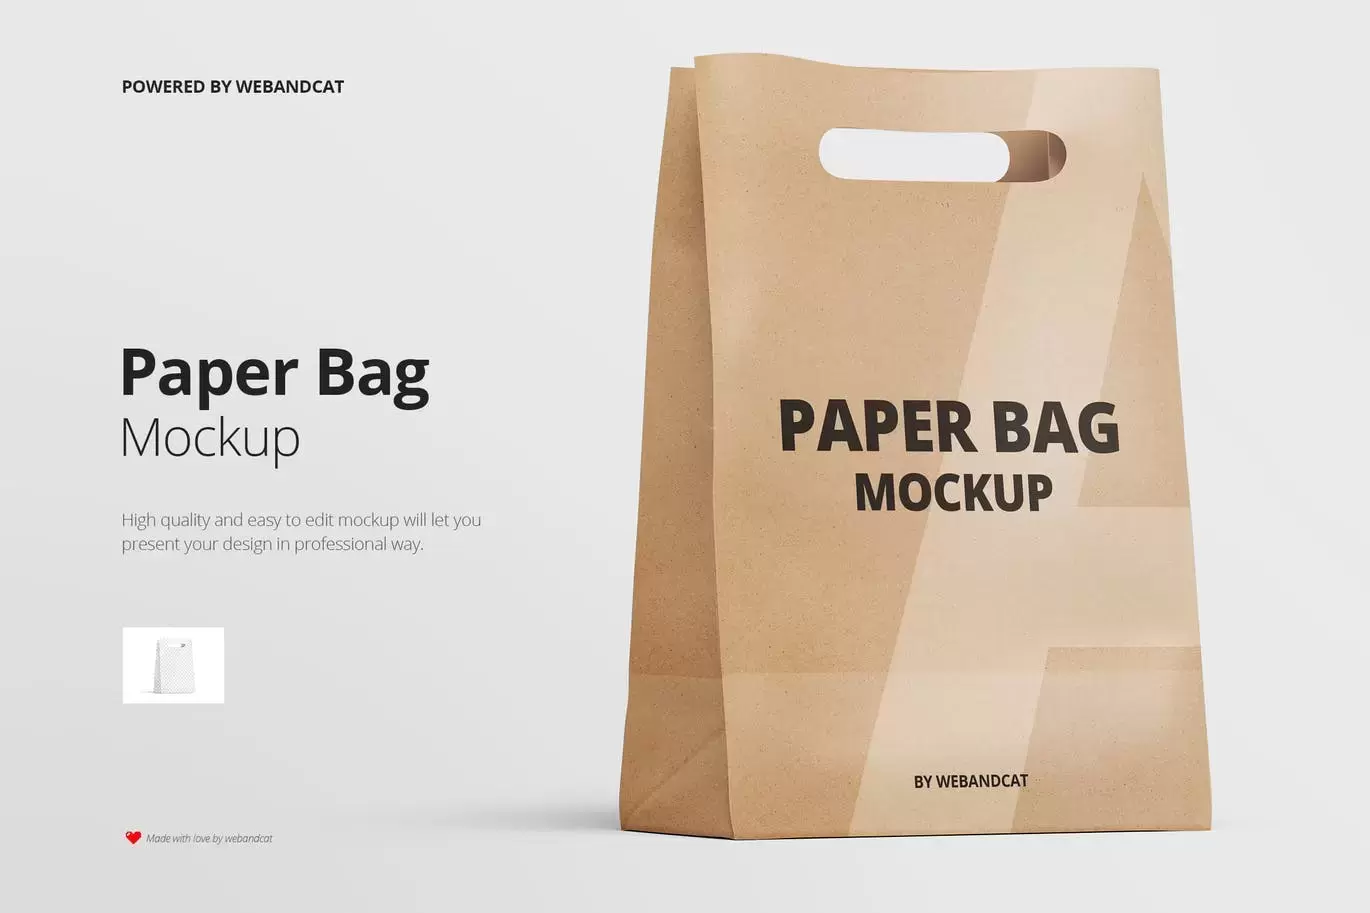 时尚高端逼真质感的牛皮纸袋购物袋包装设计VI样机展示模型mockups免费下载